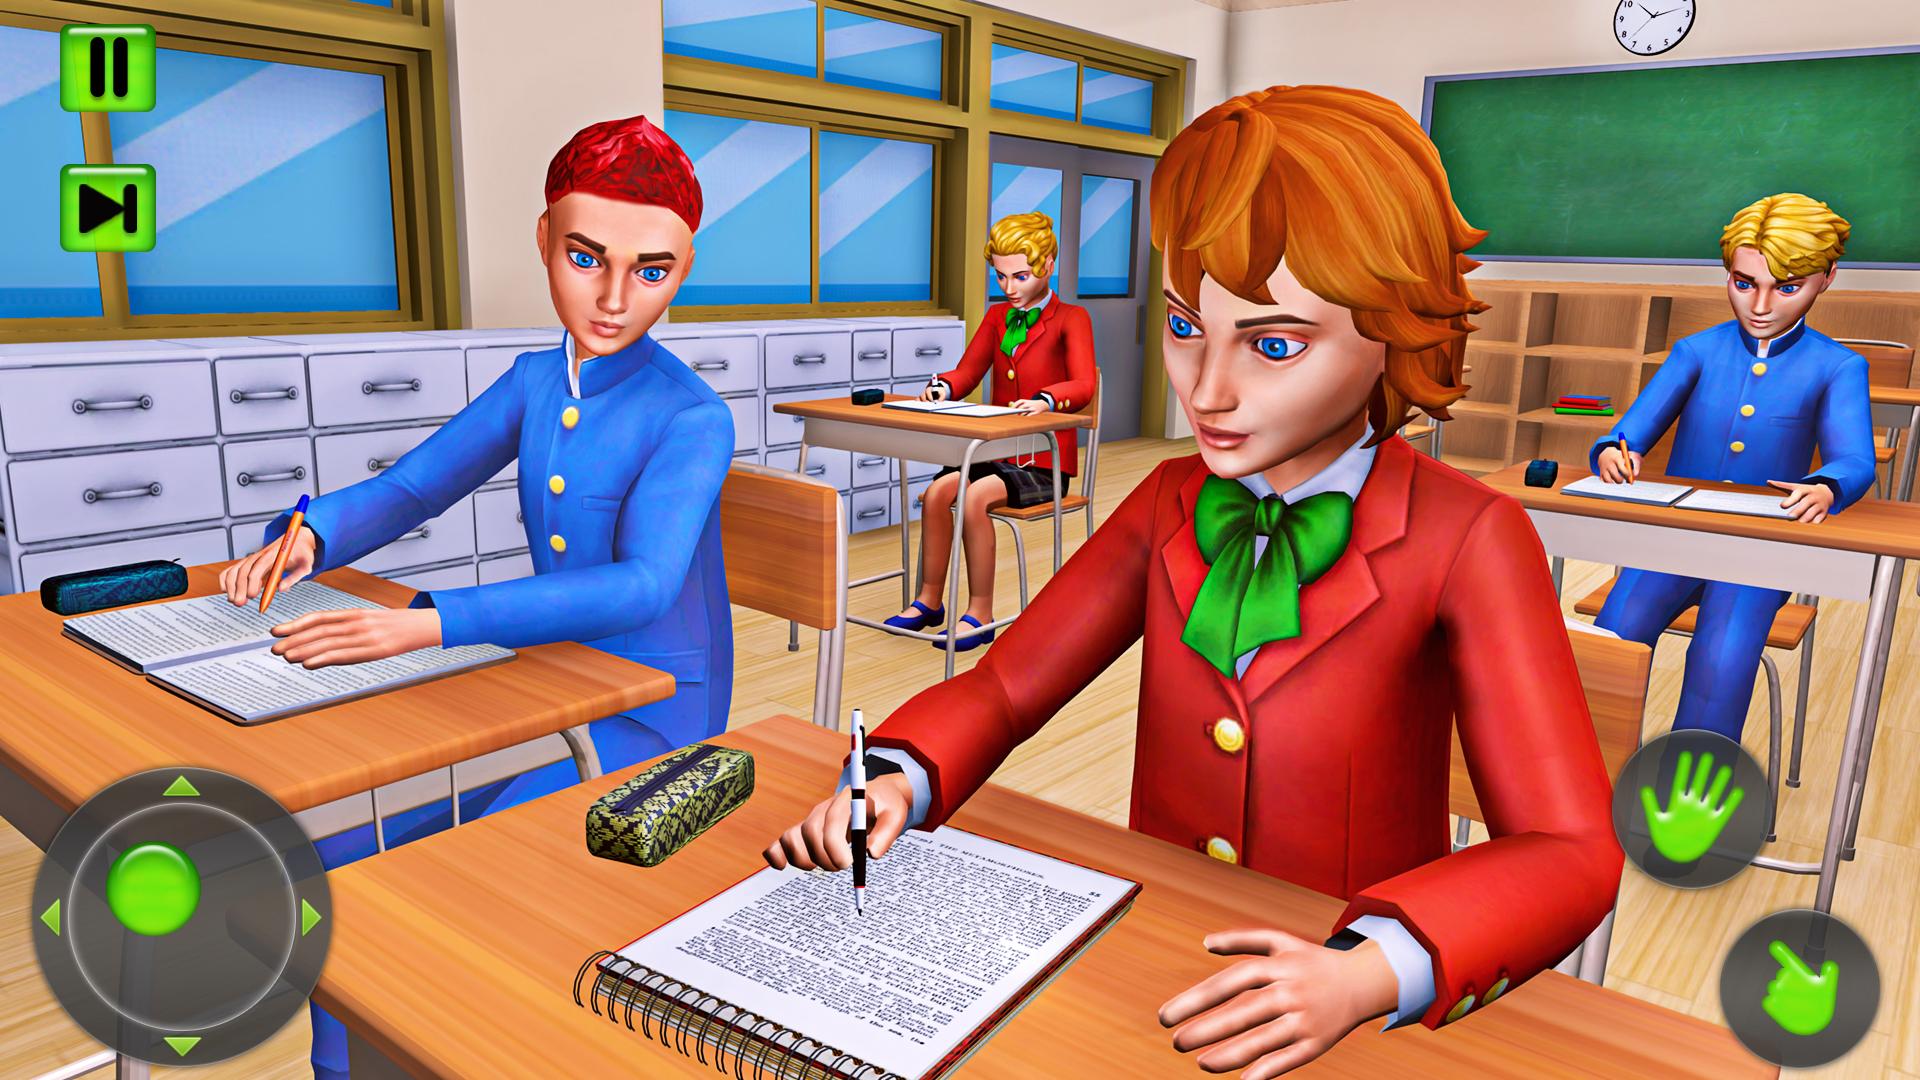 Teacher simulator на русском языке